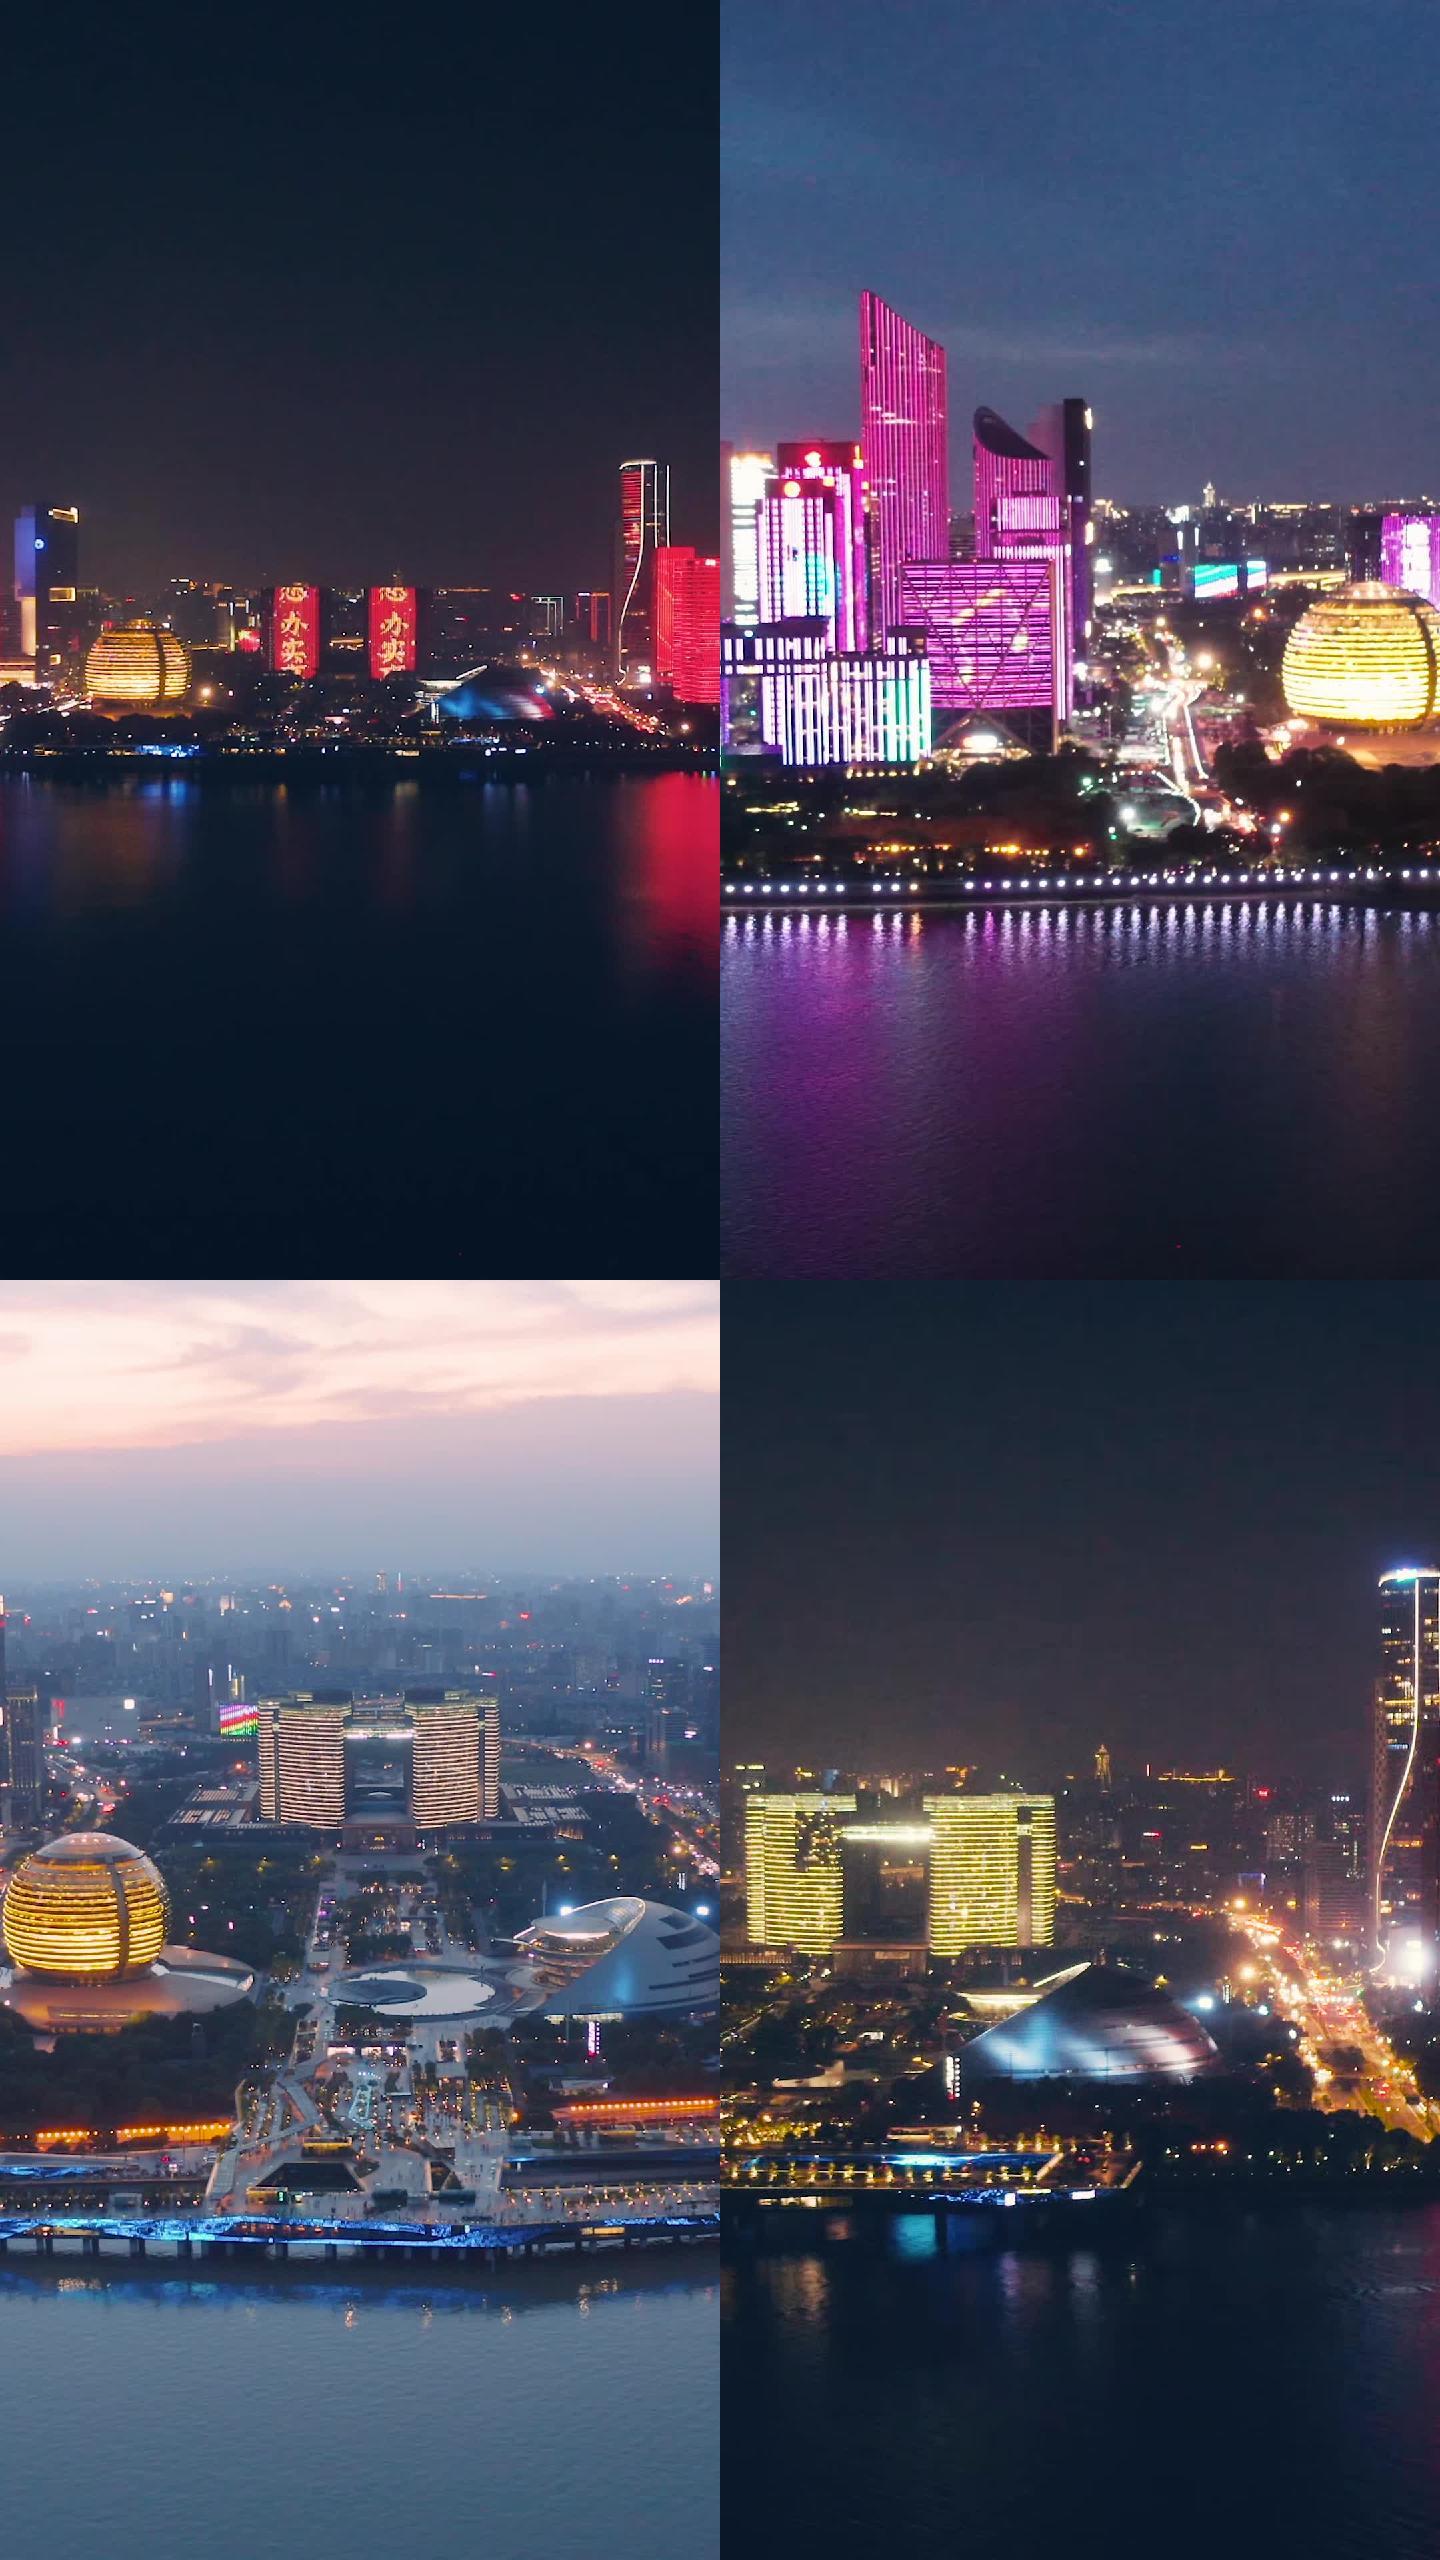 【竖屏合集】杭州钱江新城CBD夜景灯光秀